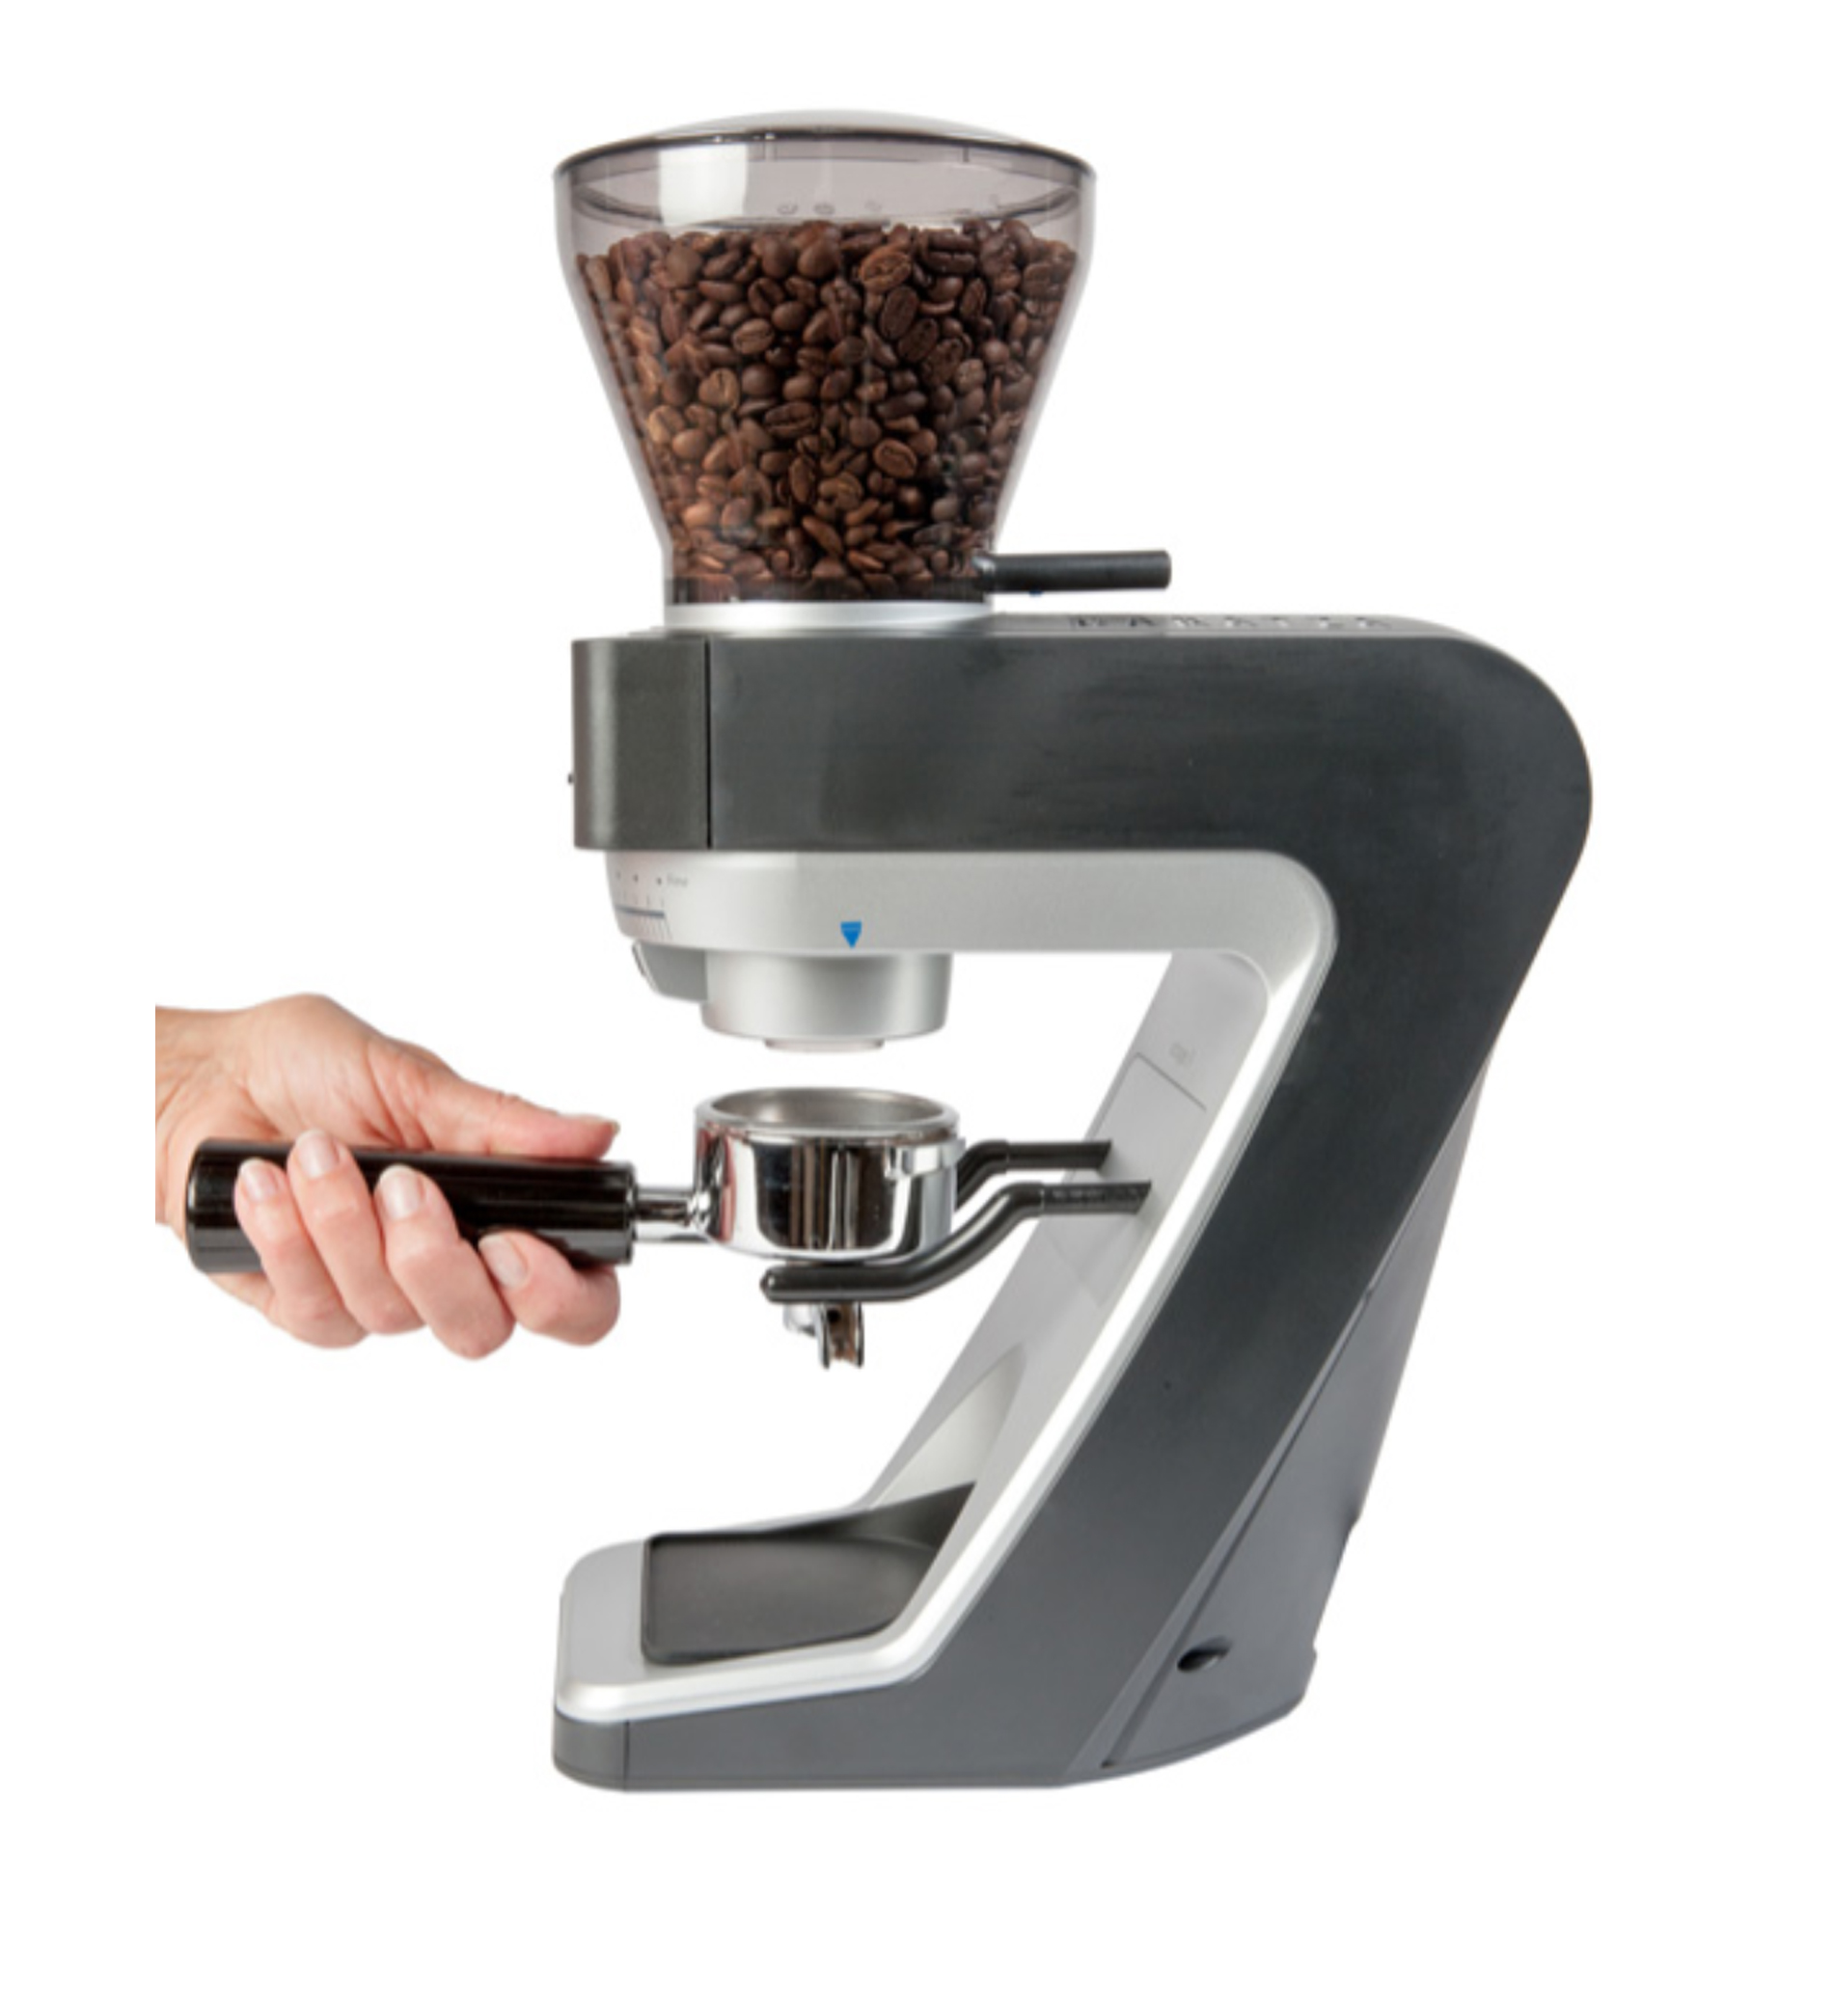 Sette 30 120v Coffee Grinder 1130